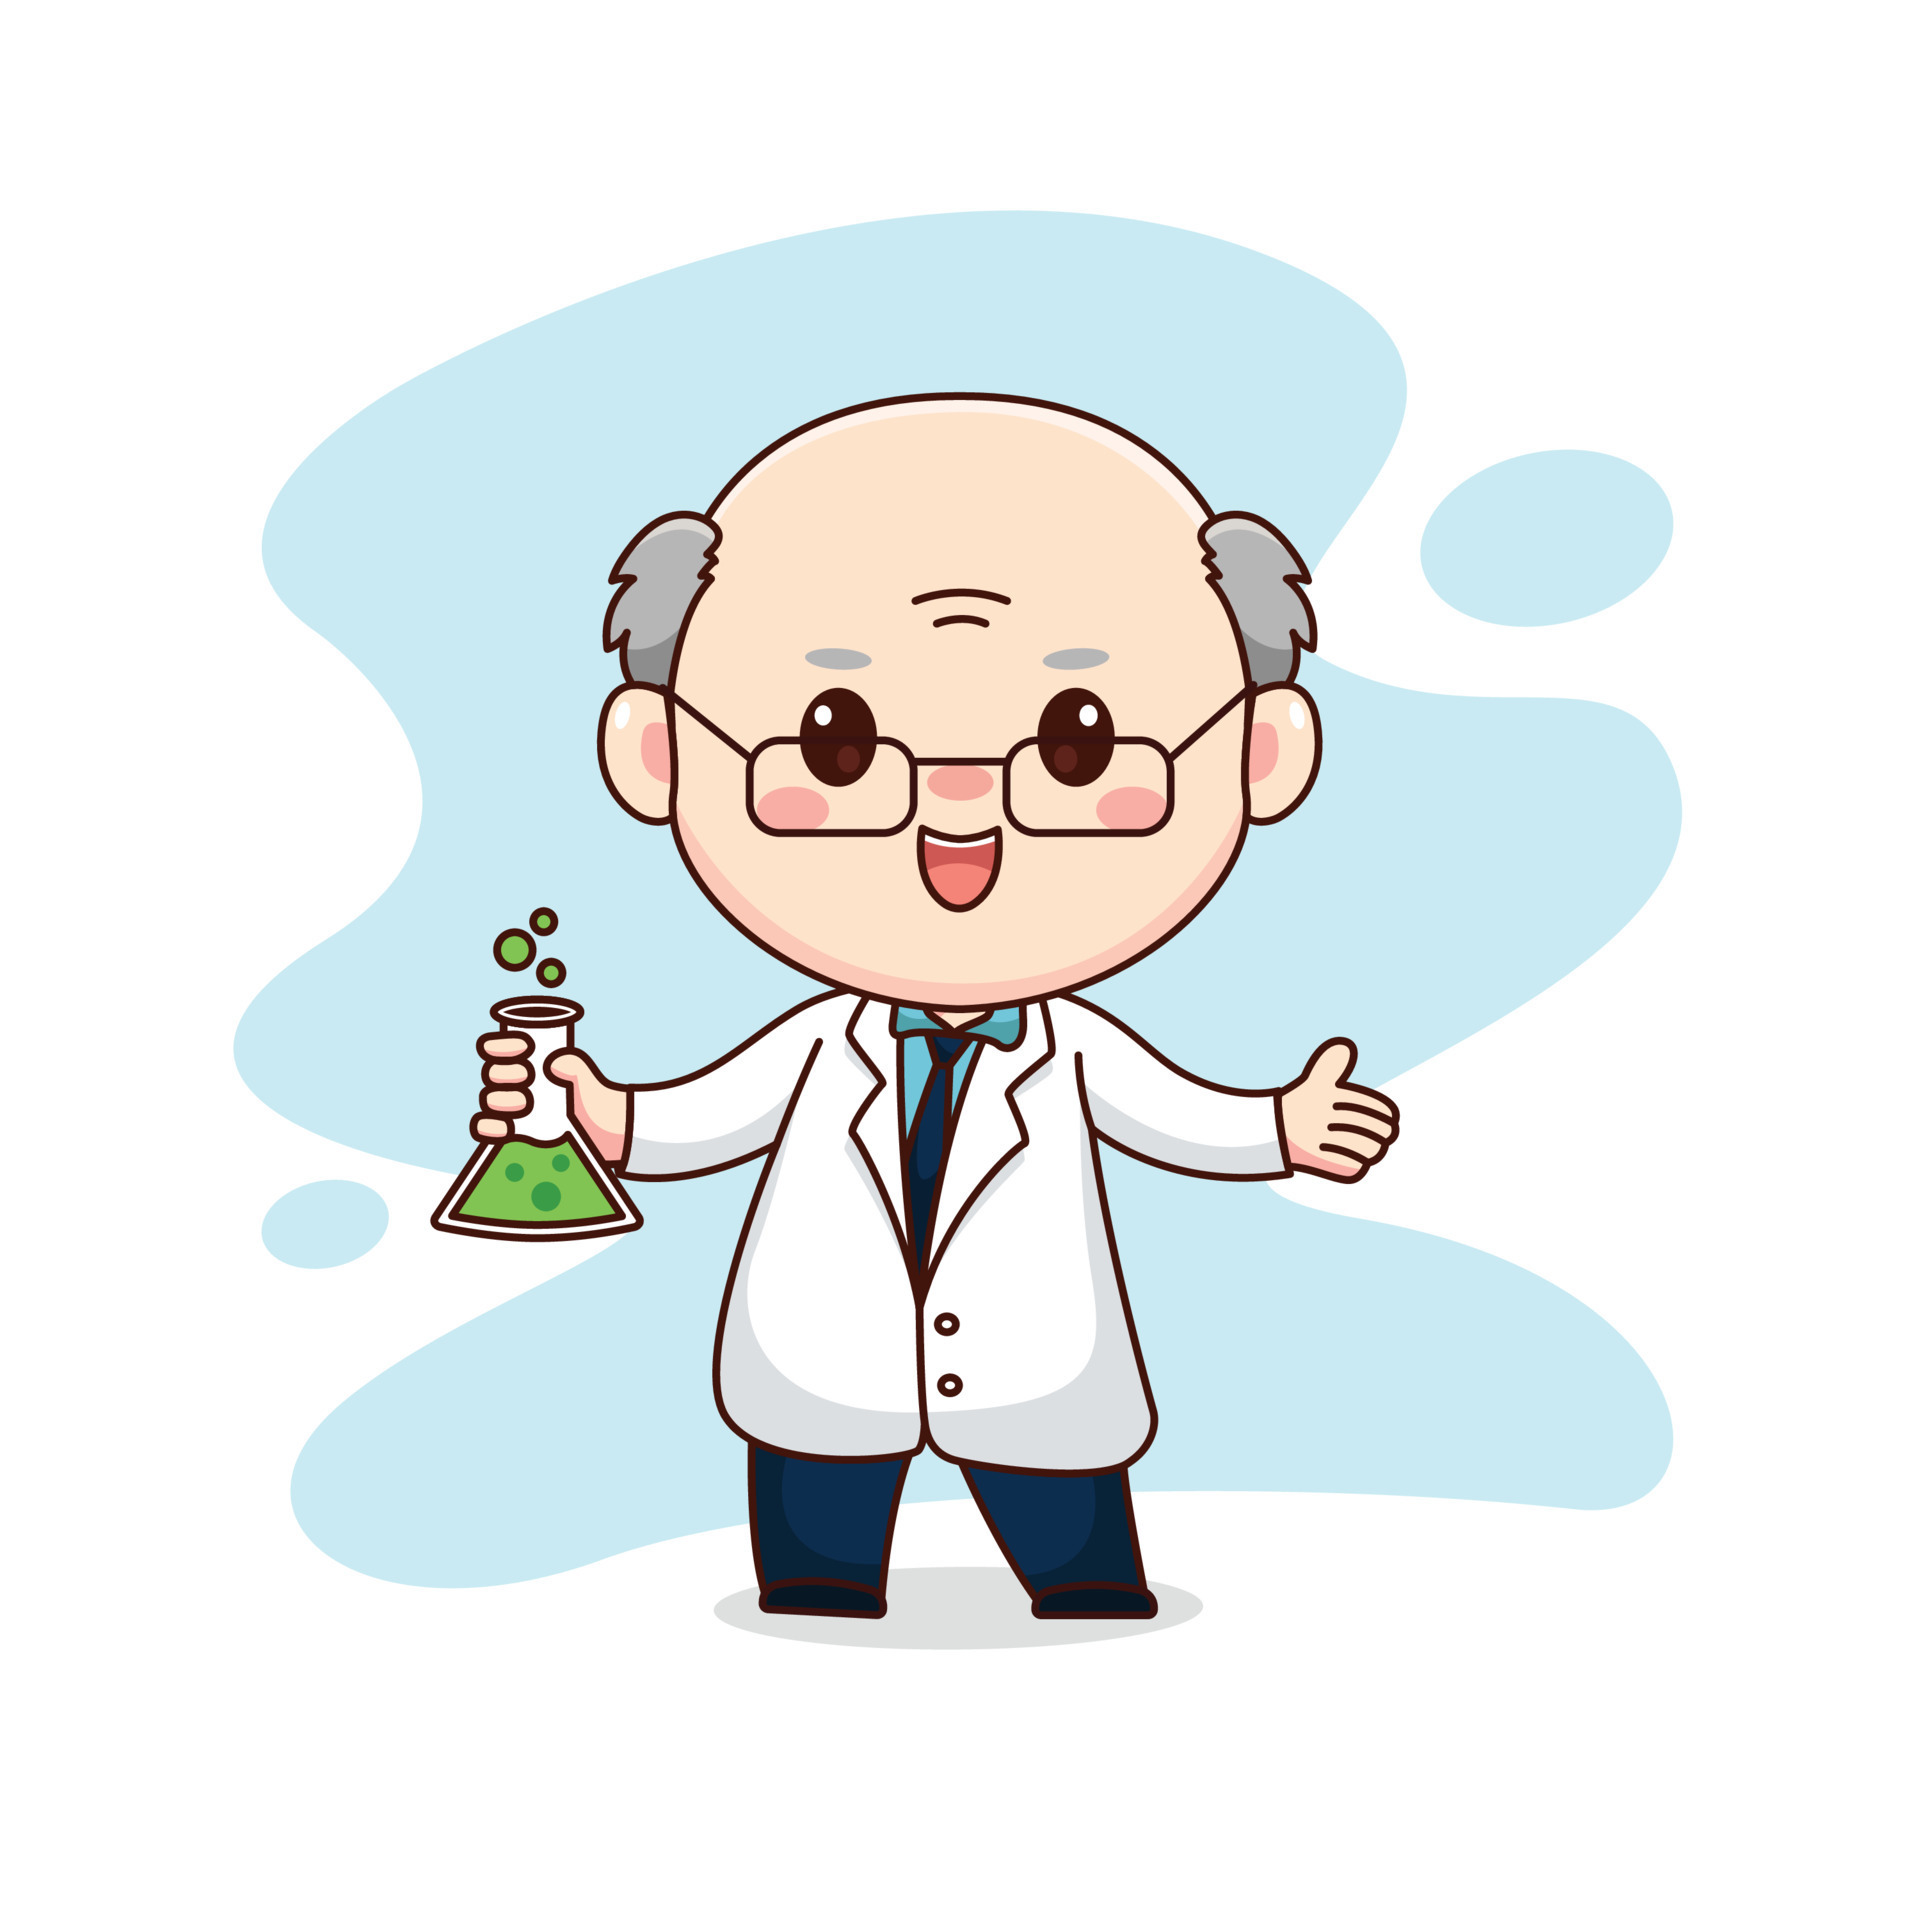 Ilustração da bela médica desenho de personagem kawaii bonito